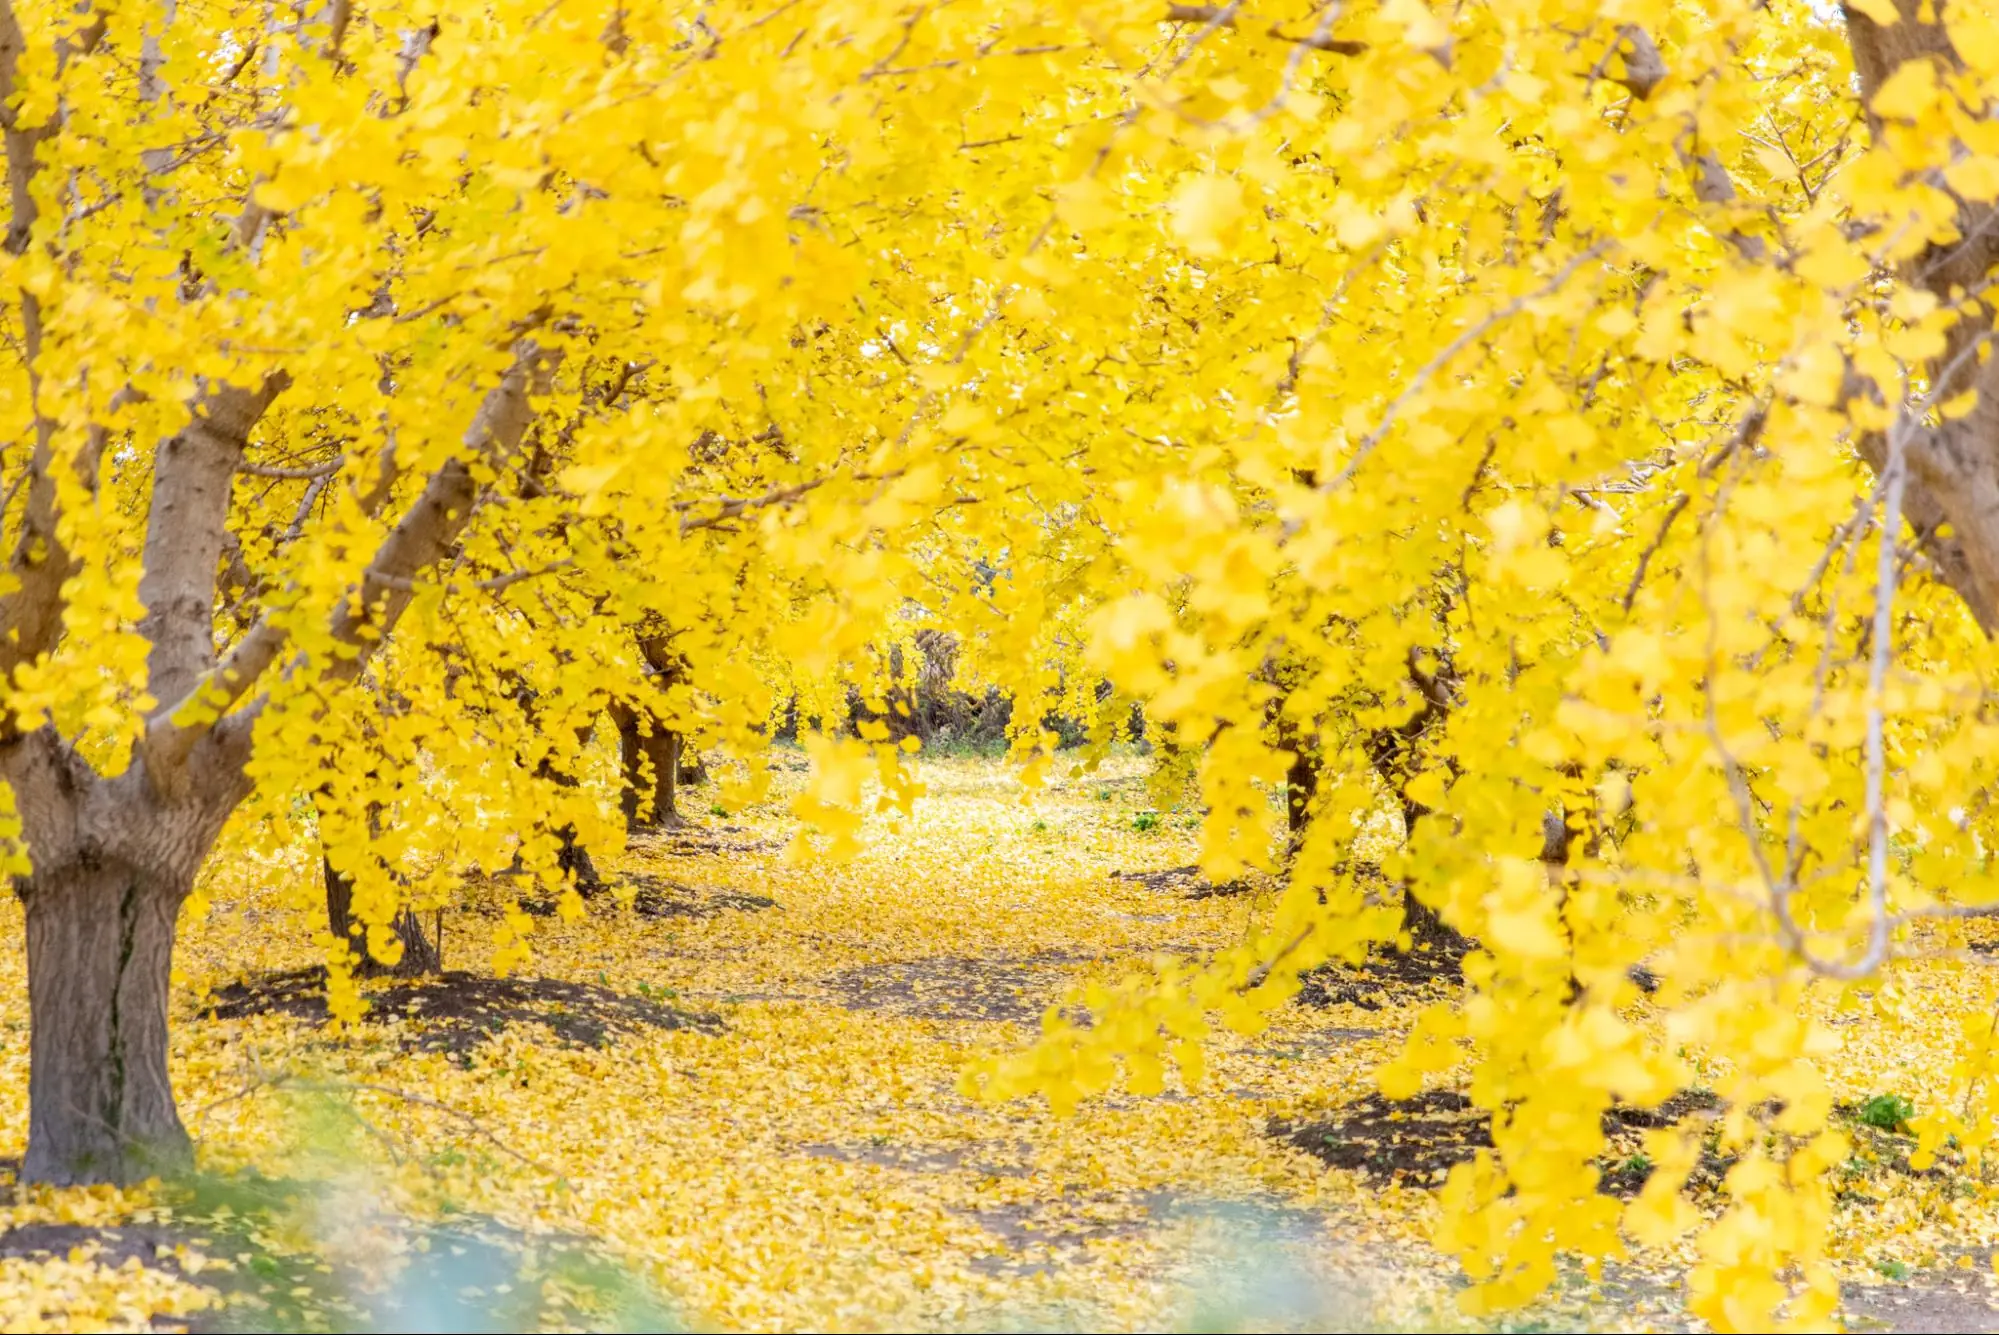 【稲沢】黄金色に輝く「そぶえイチョウ黄葉まつり」へ行ってきました。